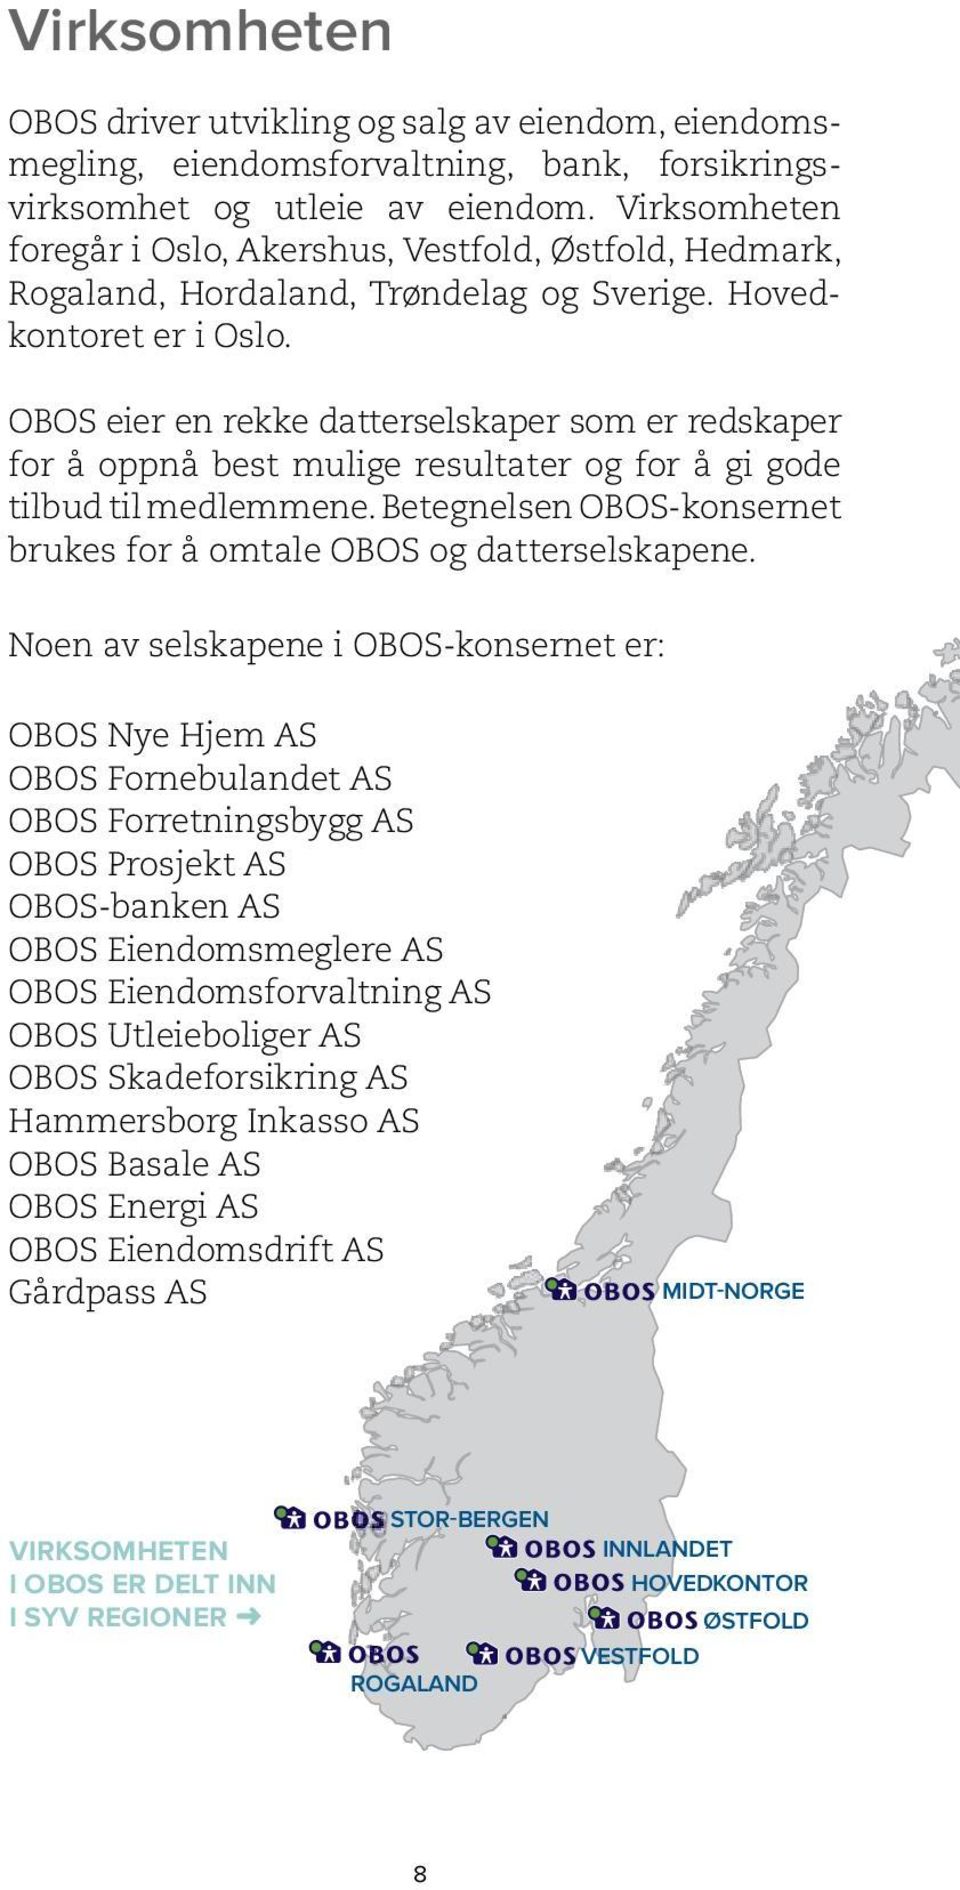 OBOS eier en rekke datterselskaper som er redskaper for å oppnå best mulige resultater og for å gi gode tilbud til medlemmene. Betegnelsen OBOS-konsernet brukes for å omtale OBOS og datterselskapene.